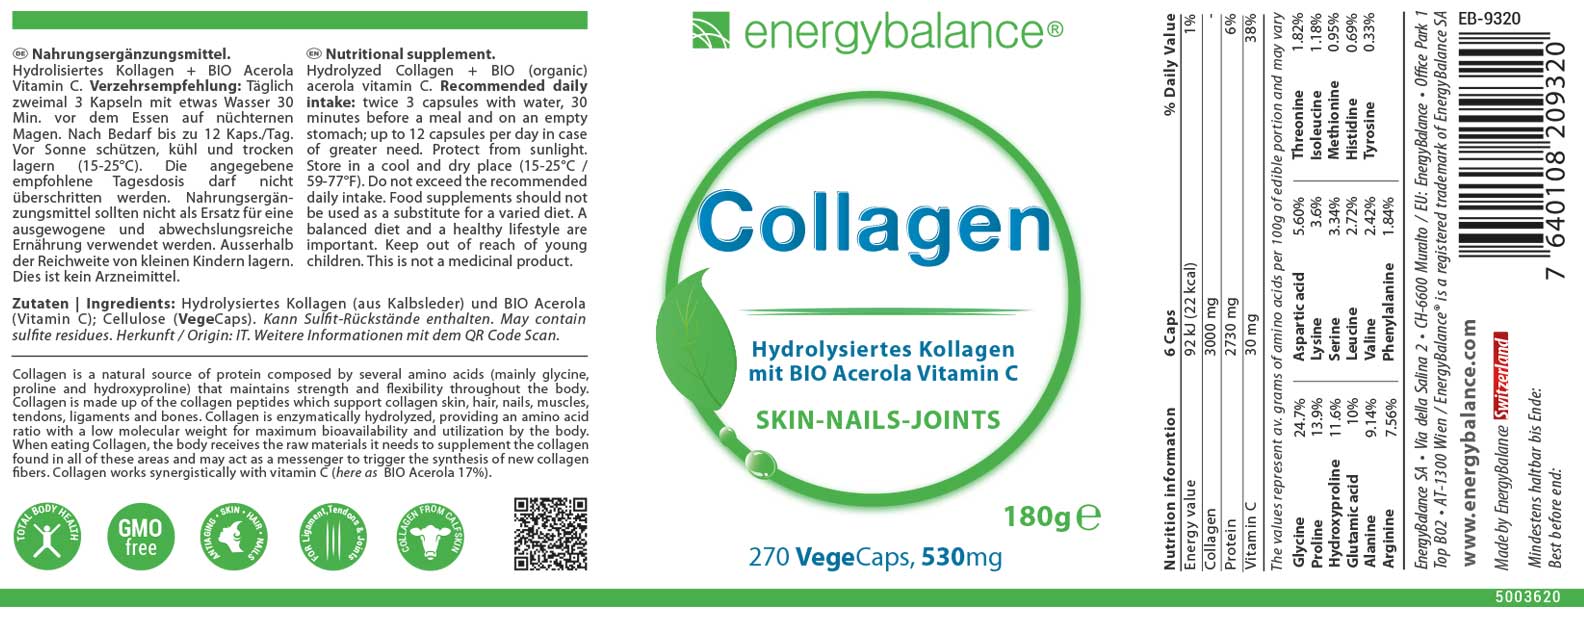 Collagen Etikett von Energybalance